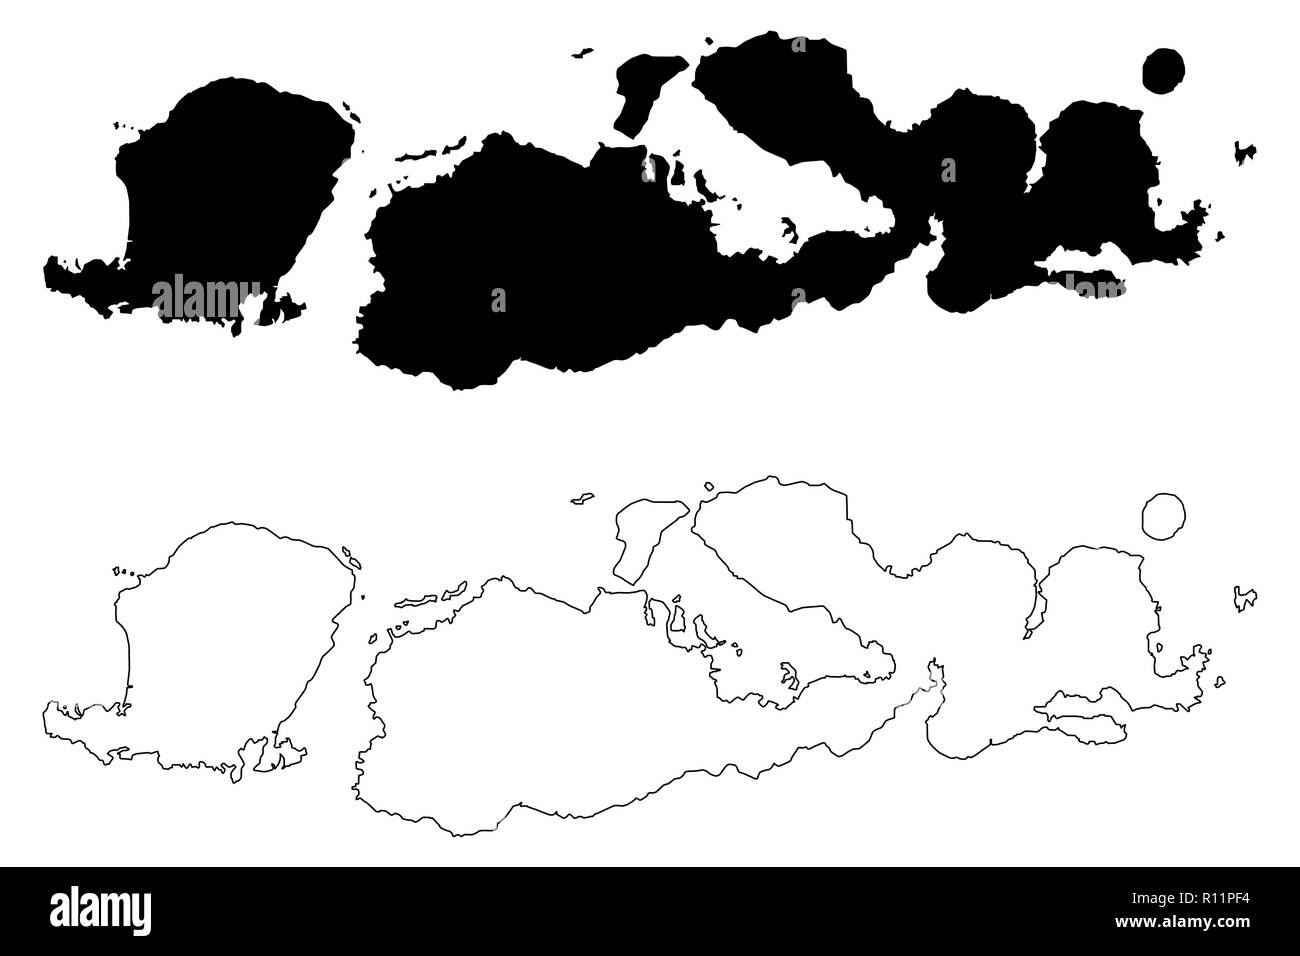 West Nusa Tenggara (Unterteilungen von Indonesien, Provinzen Indonesiens) Karte Vektor-illustration, kritzeln Skizze Nusa Tenggara Barat (Lesser Sunda Isla Stock Vektor